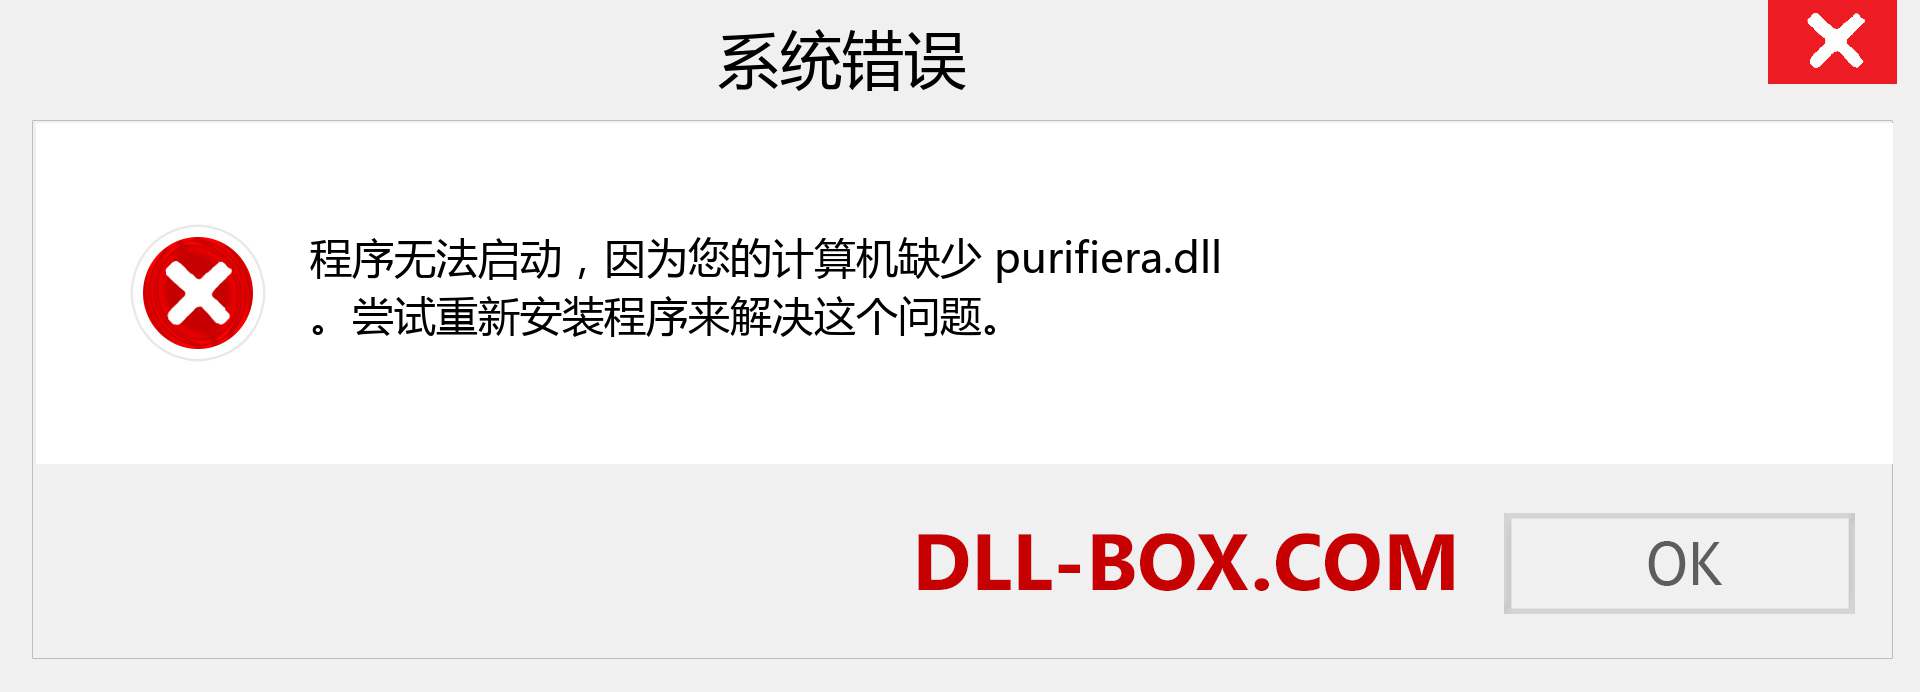 purifiera.dll 文件丢失？。 适用于 Windows 7、8、10 的下载 - 修复 Windows、照片、图像上的 purifiera dll 丢失错误